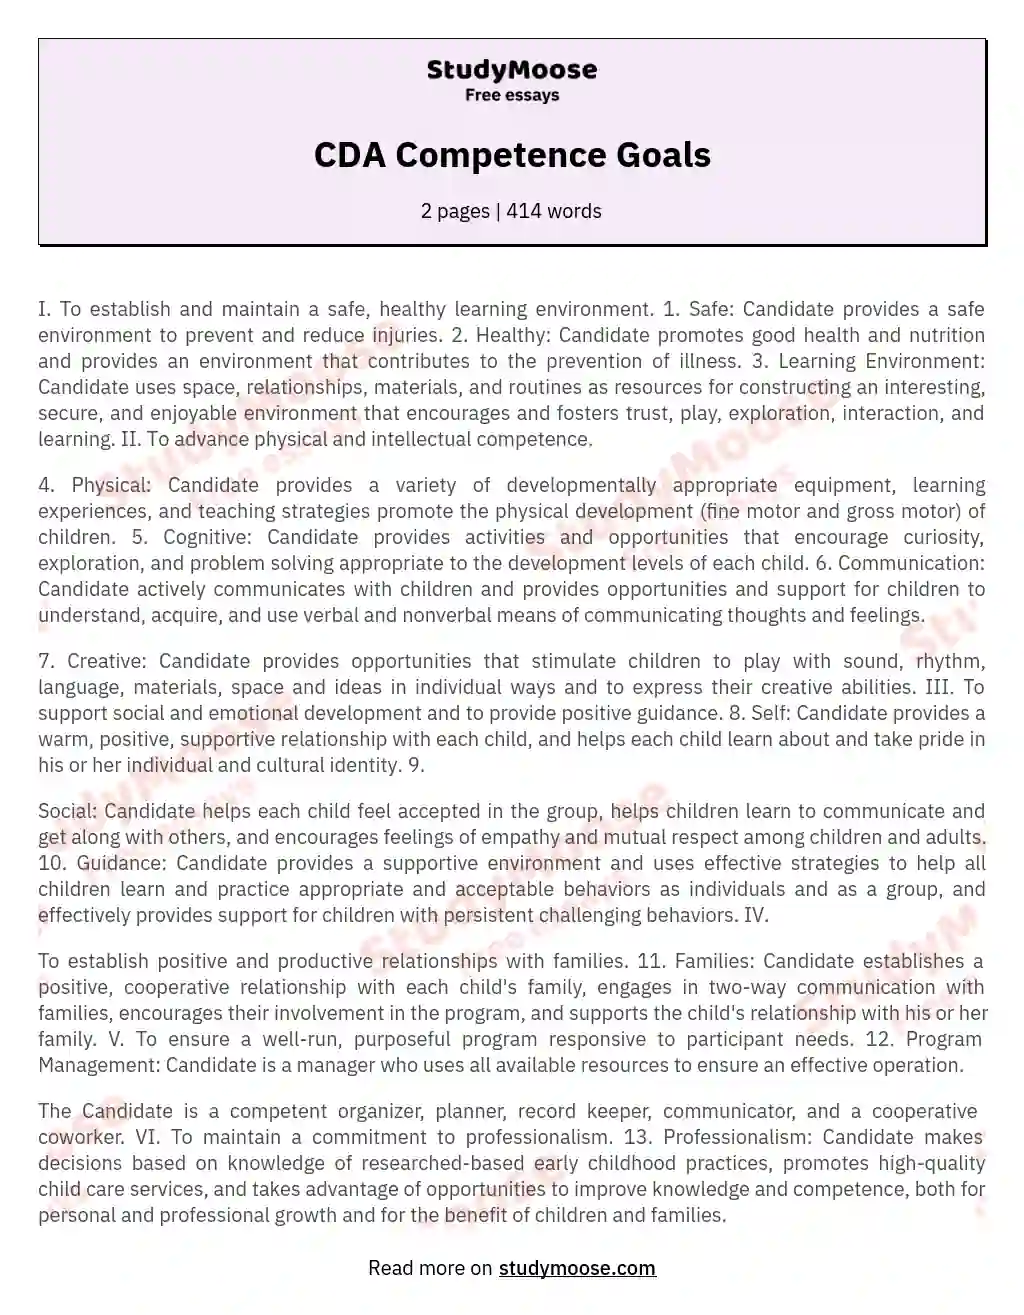 CDA Competence Goals essay